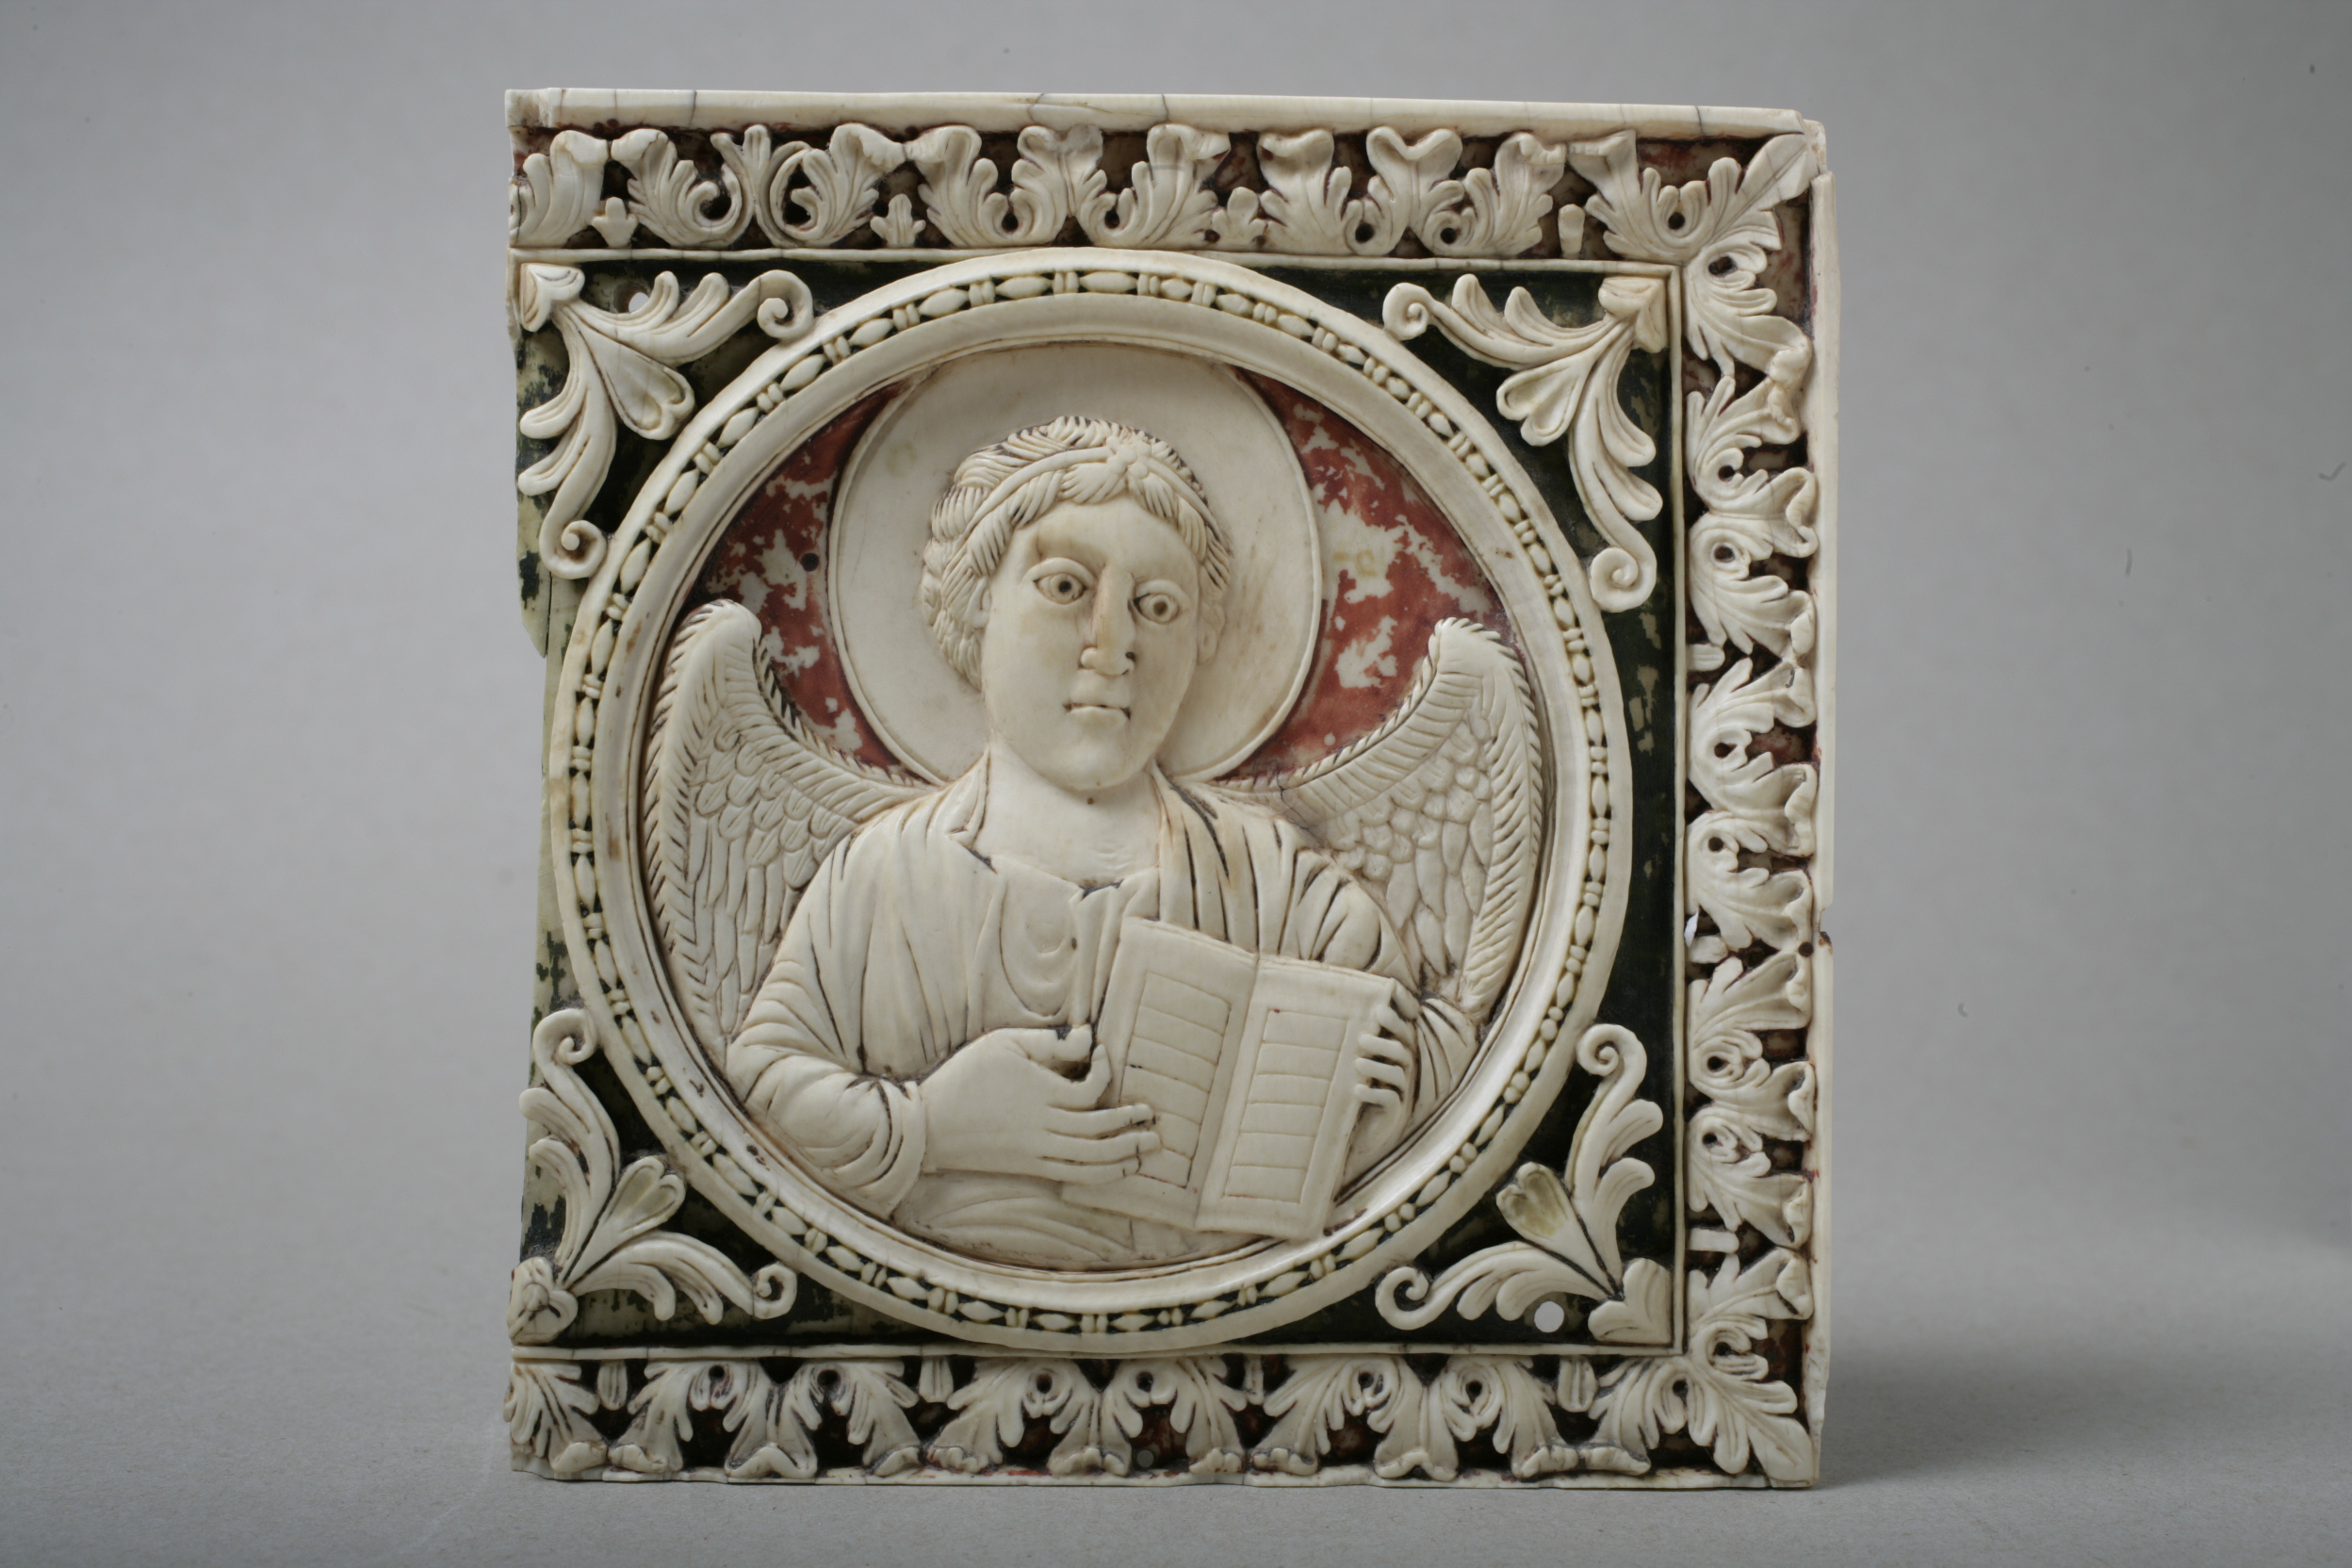 Angelo simbolo dell'Evangelista Matteo (formella - di dittico, opera isolata) - manifattura Italia settentrionale (prima metà VIII-IX)